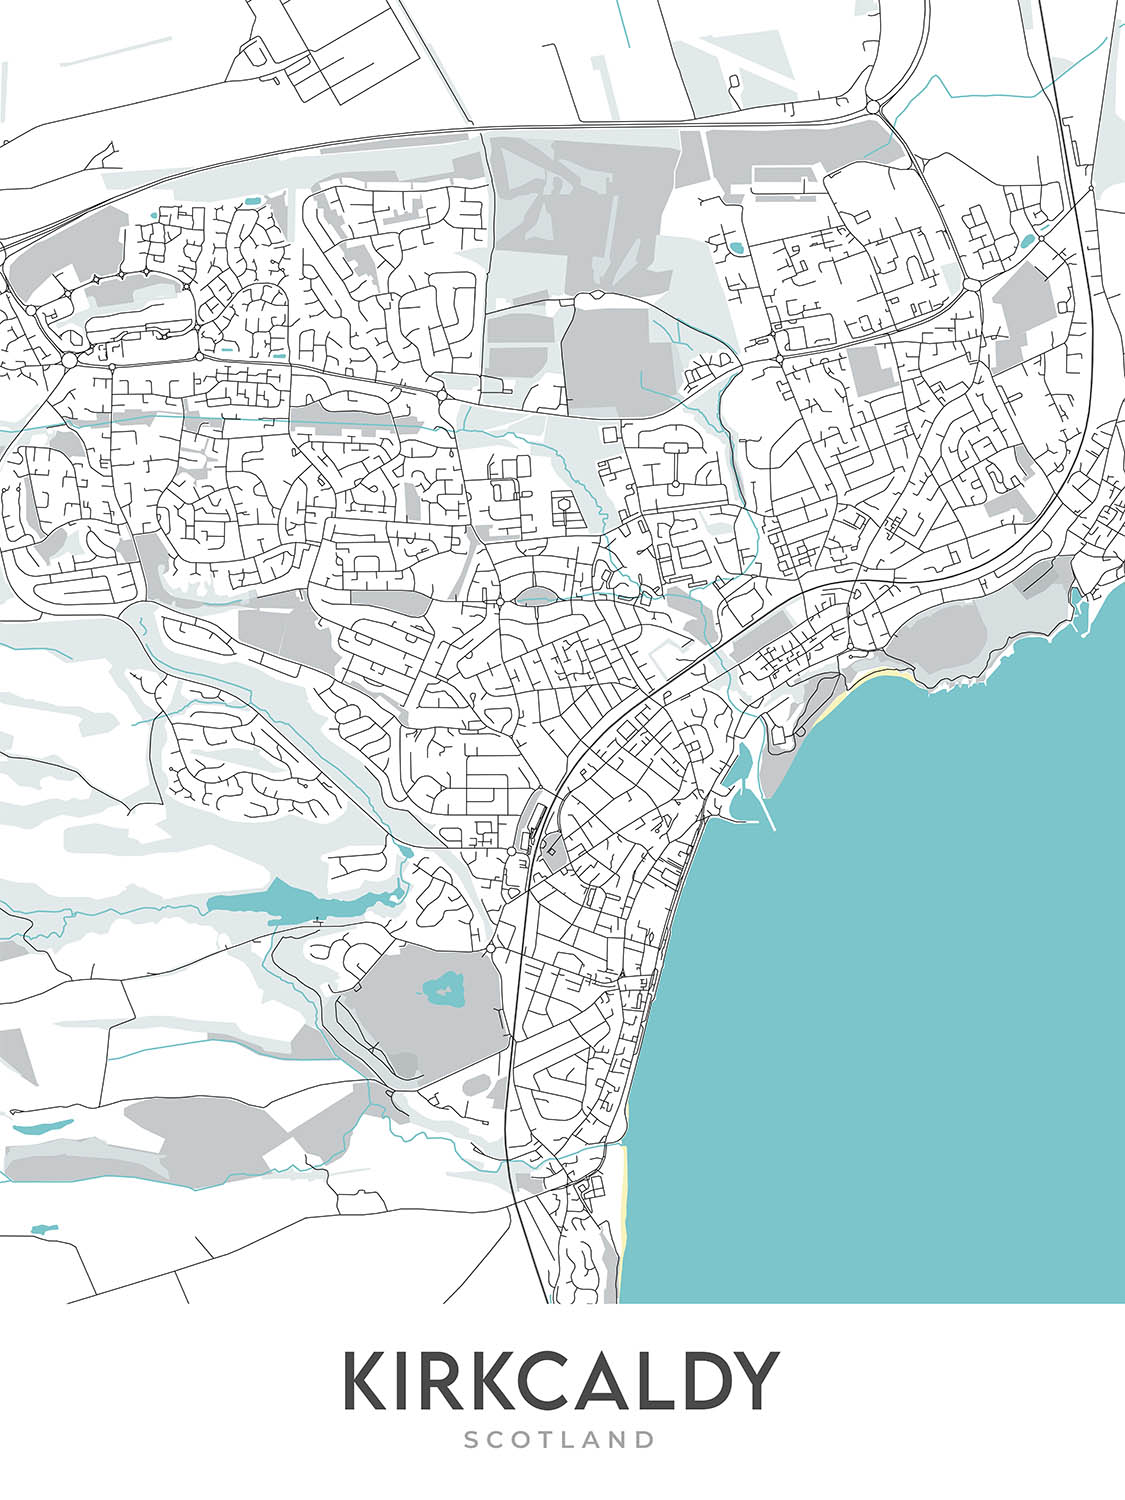 Moderner Stadtplan von Kirkcaldy, Schottland: Ravenscraig Castle, Beveridge Park, A921, Pathhead, Harbour